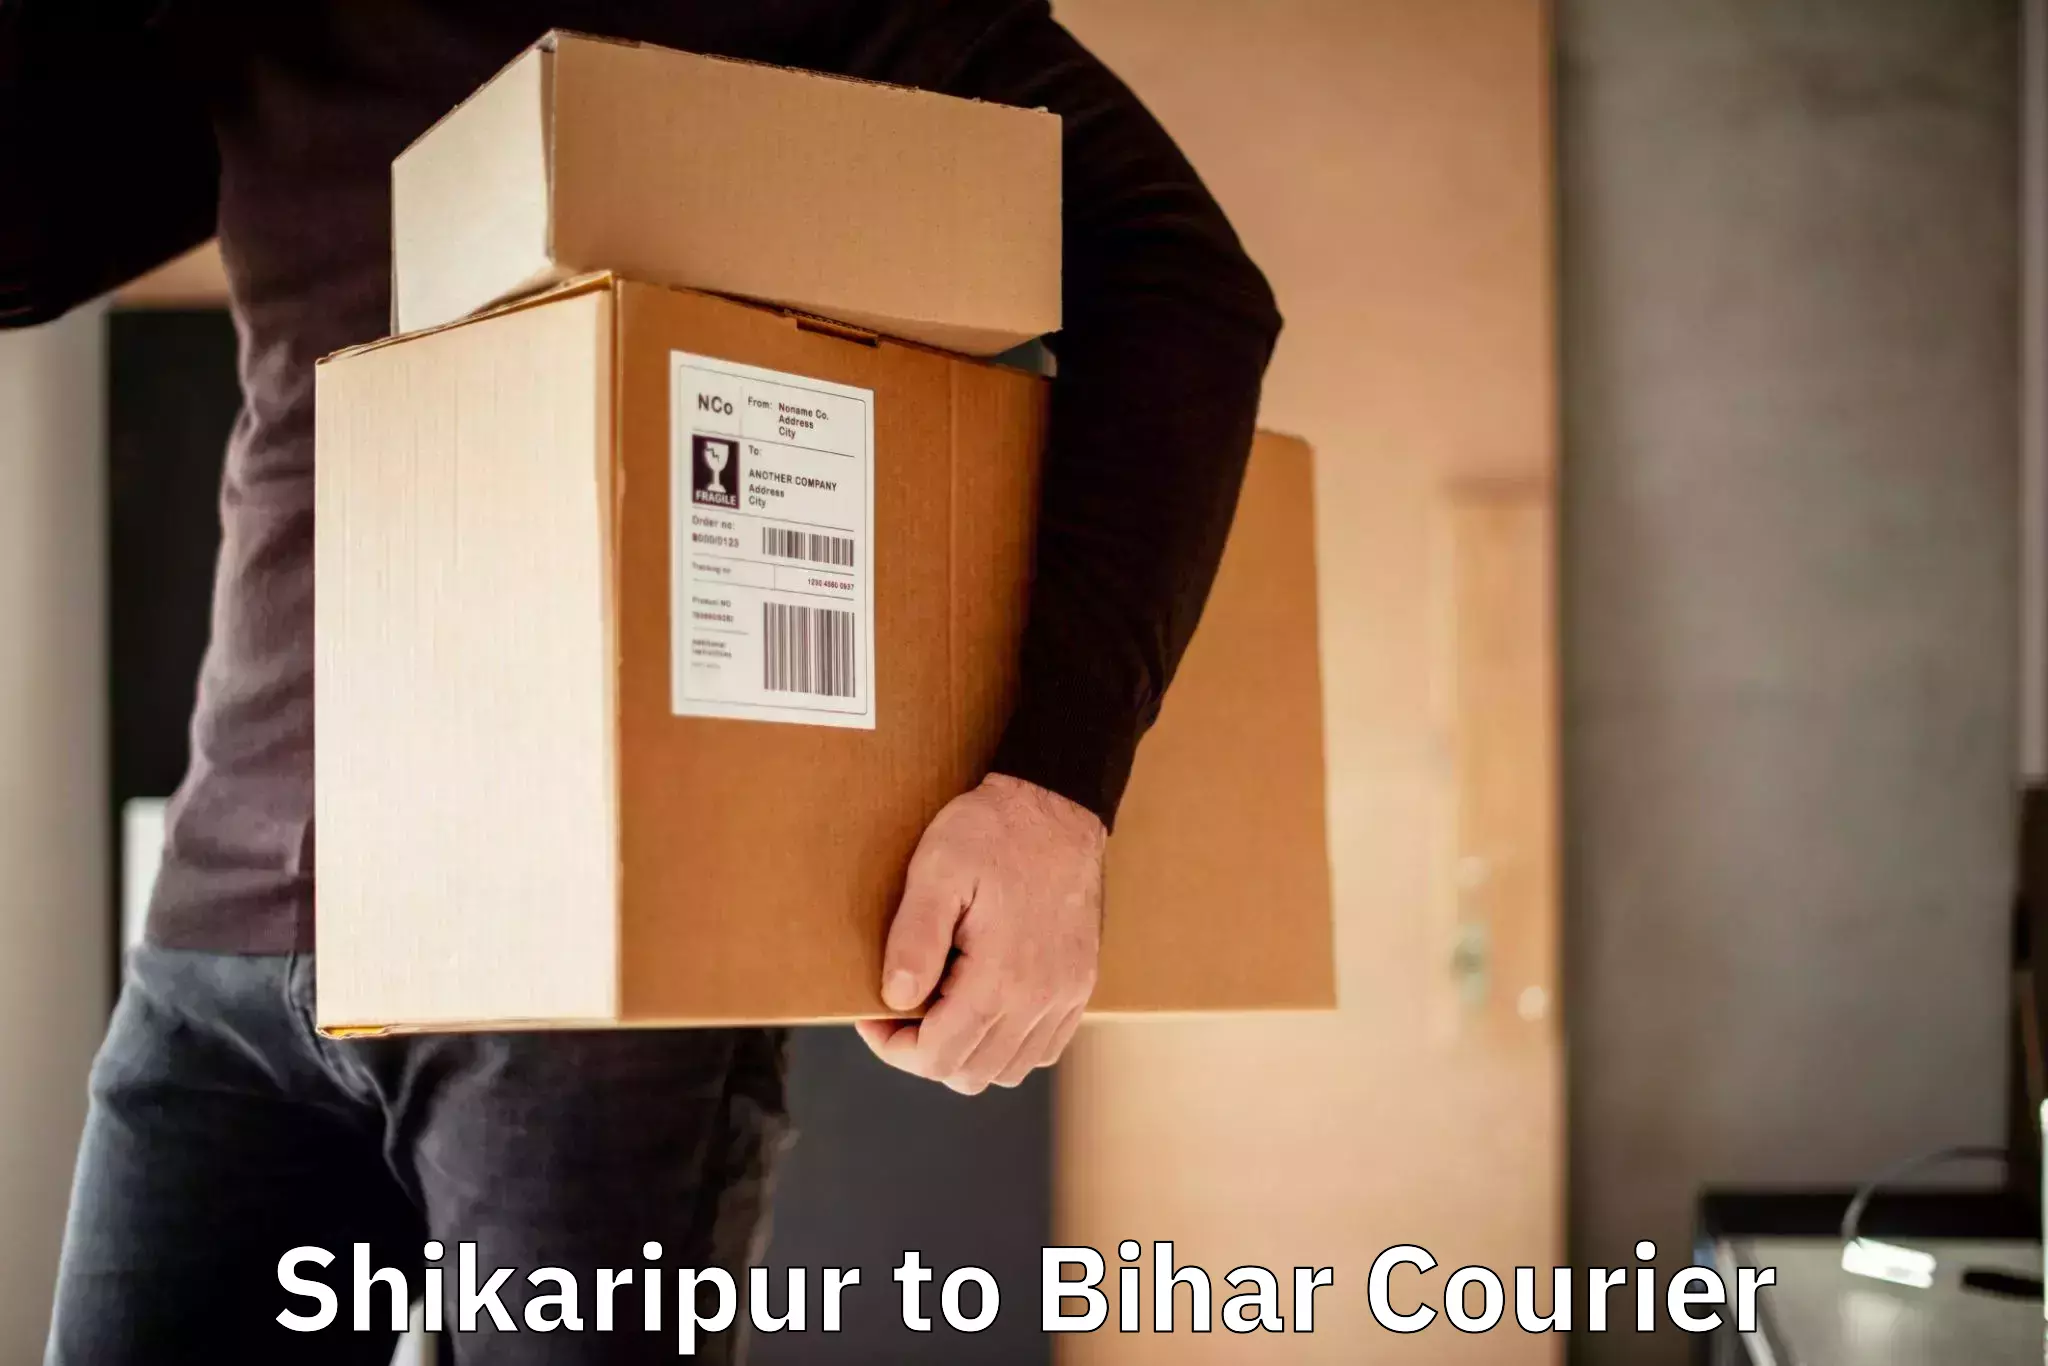 Professional courier handling Shikaripur to Dighwara